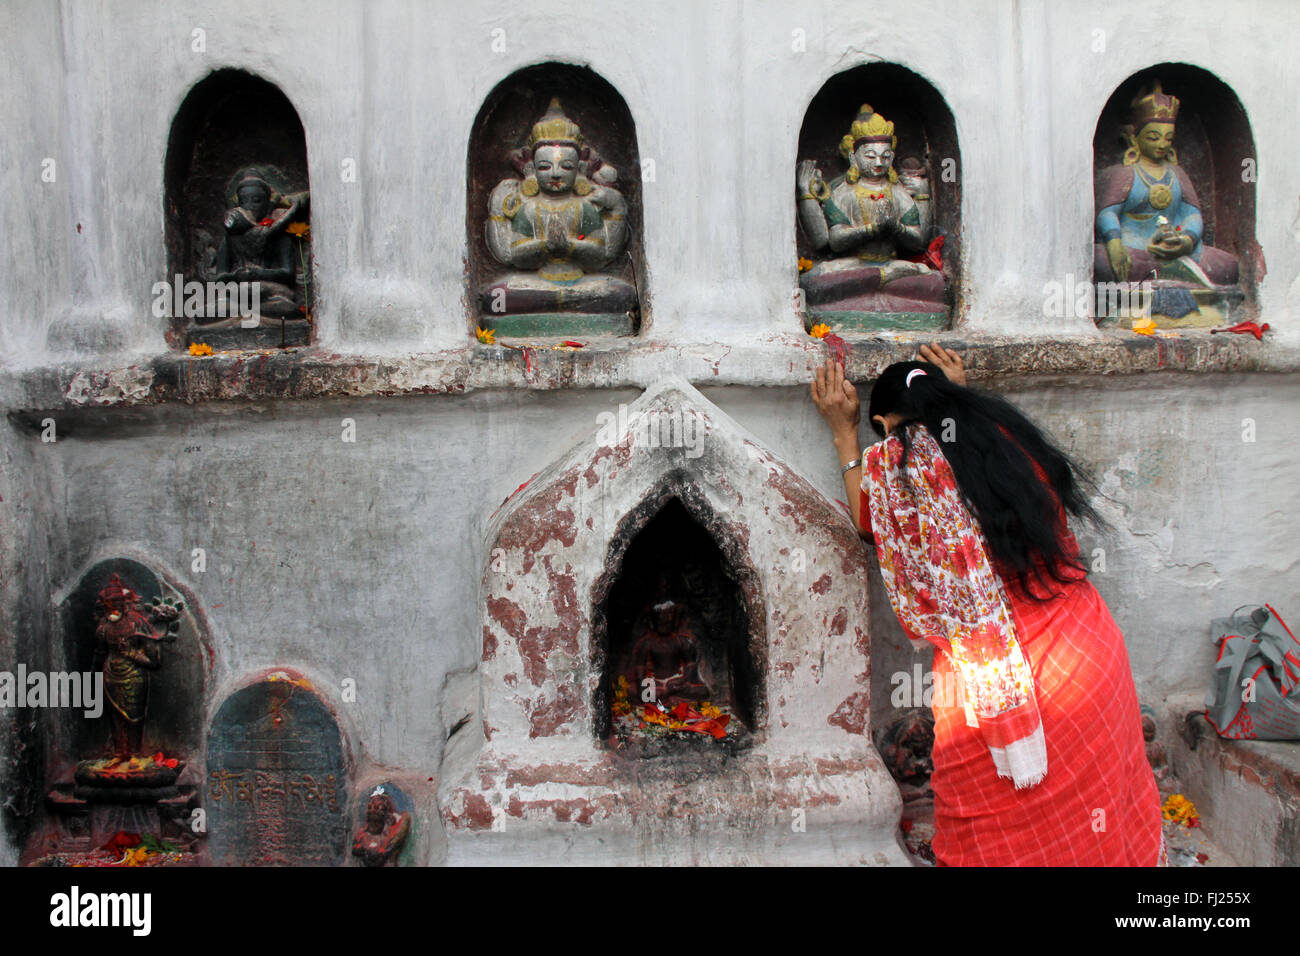 Woman praying at the Boudhanath stupa, Nepal Stock Photo